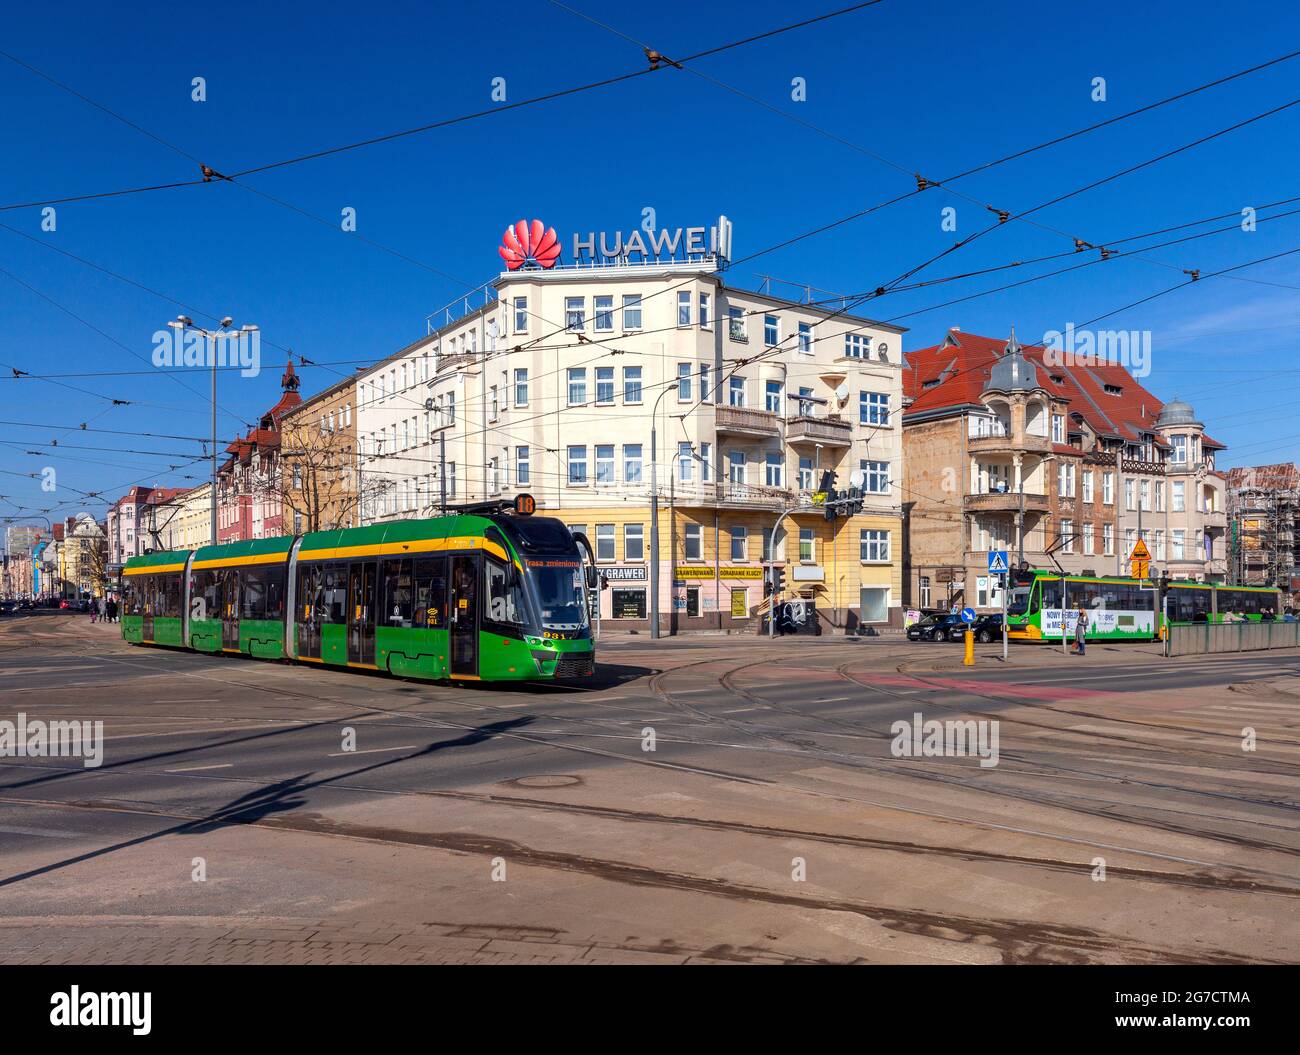 Polonia, Poznan - 2 marzo 2021: Tram verde moderno nel centro della città in una mattina soleggiata. Foto Stock